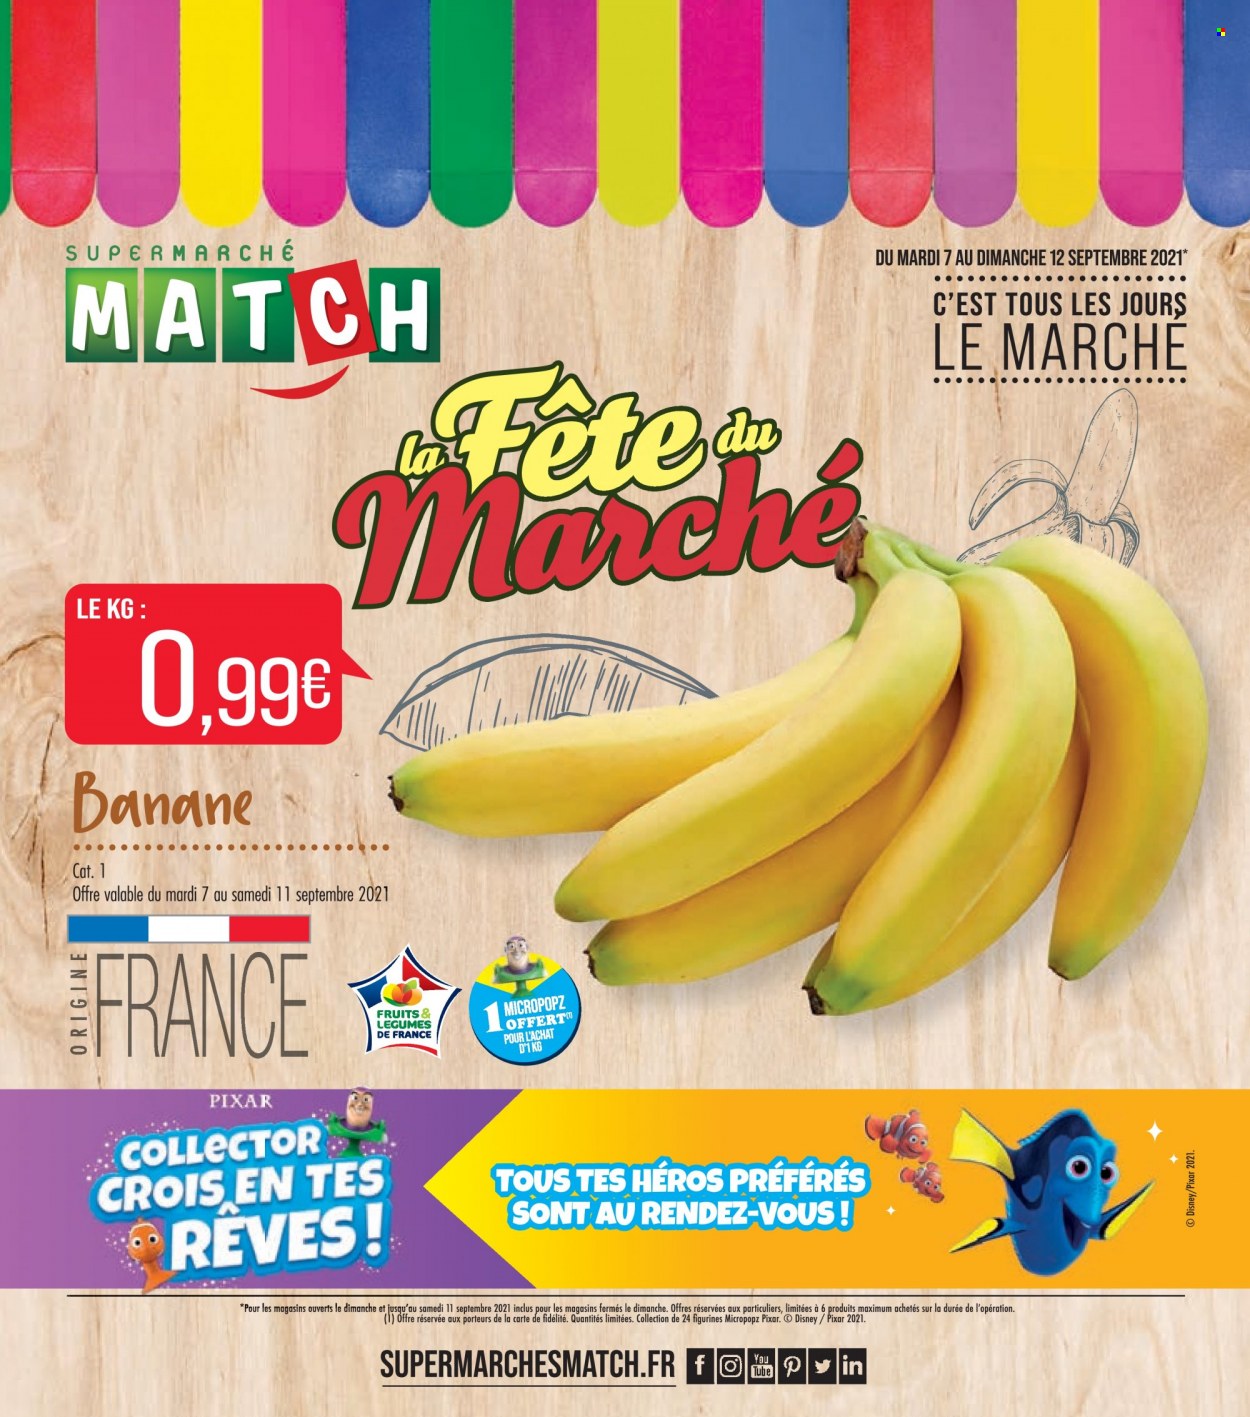 thumbnail - Catalogue Supermarché Match - 07/09/2021 - 12/09/2021 - Produits soldés - Disney, bananes, figurine. Page 1.